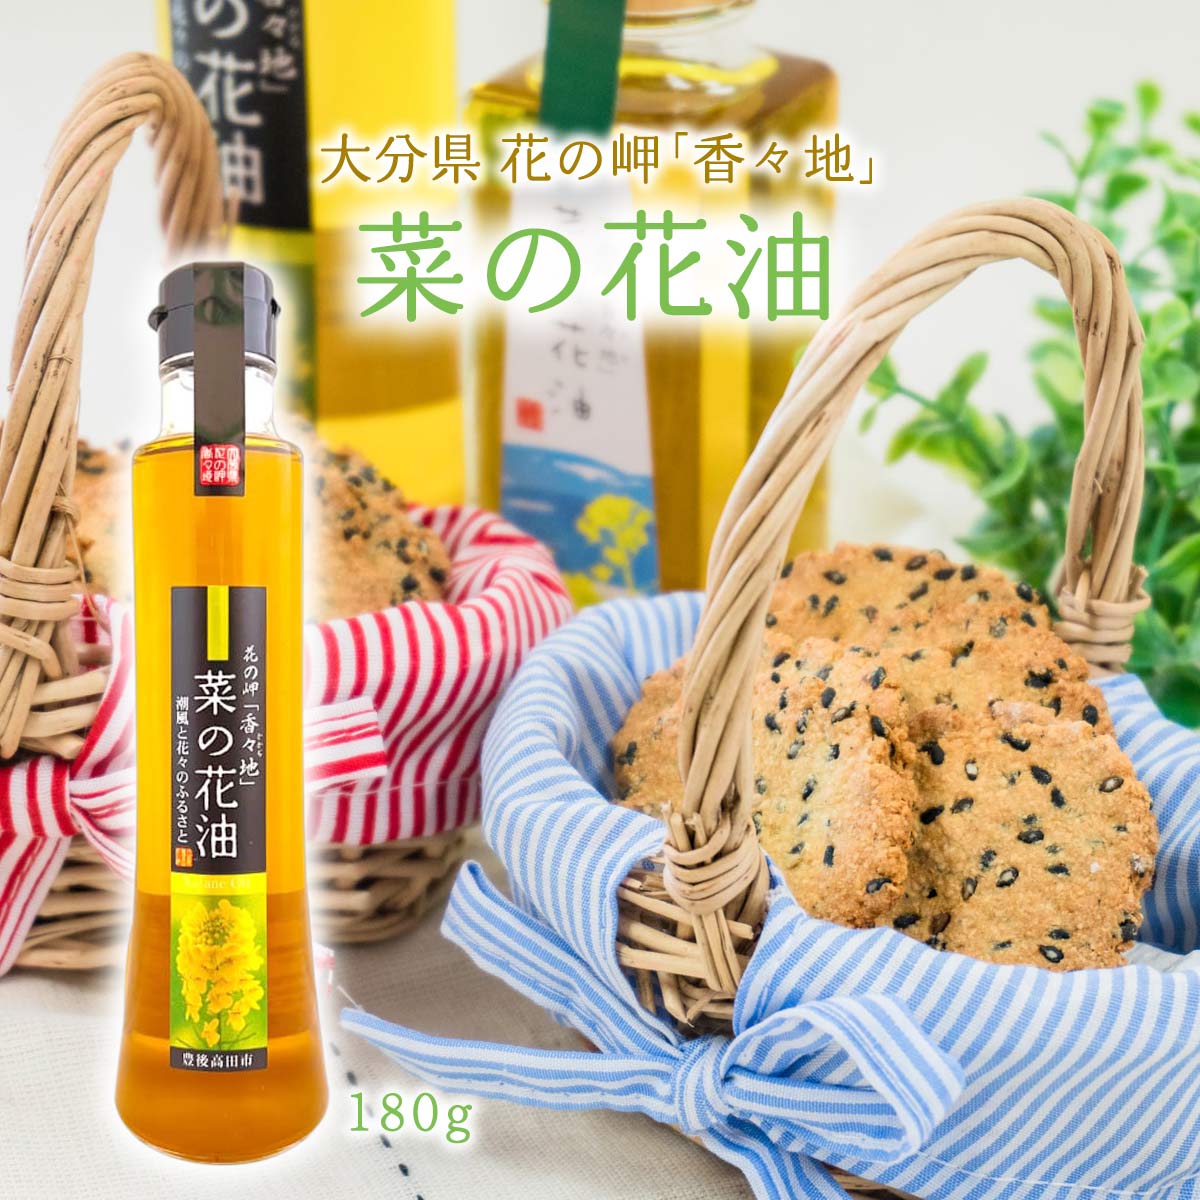 []  Ԃ̖uXnv ؂̉Ԗ 180g Y ԍ Ѝ͔| g Y ؎ rapeseed oil 啪 񂹃O